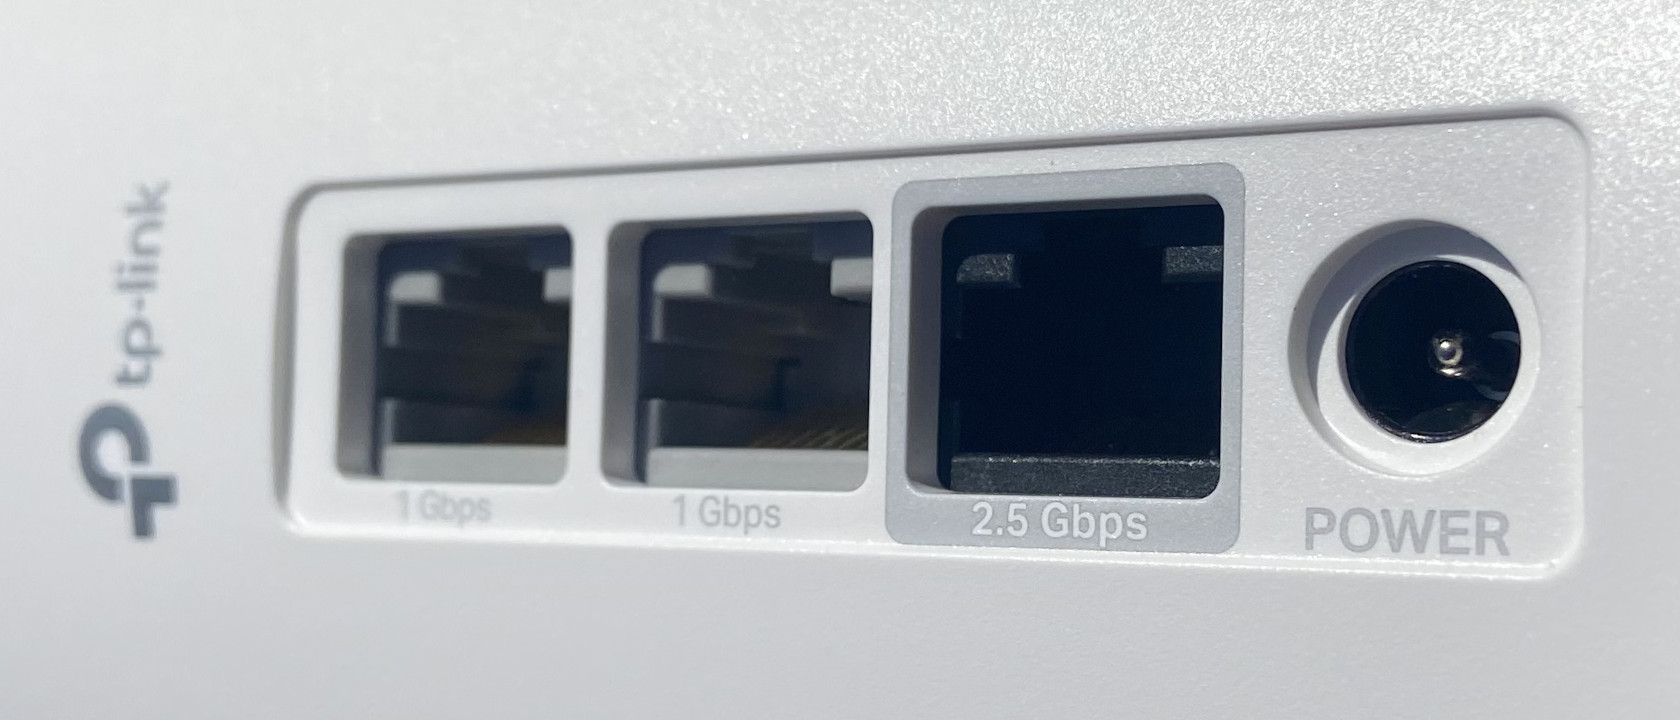 Jednotka TP-Link Deco XE75 Pro nabízí celkem 3 konektory LAN (1x 2,5GbE, 2x GbE port), které vám zprostředkují bleskurychlé kabelové připojení pro kritické aplikace.